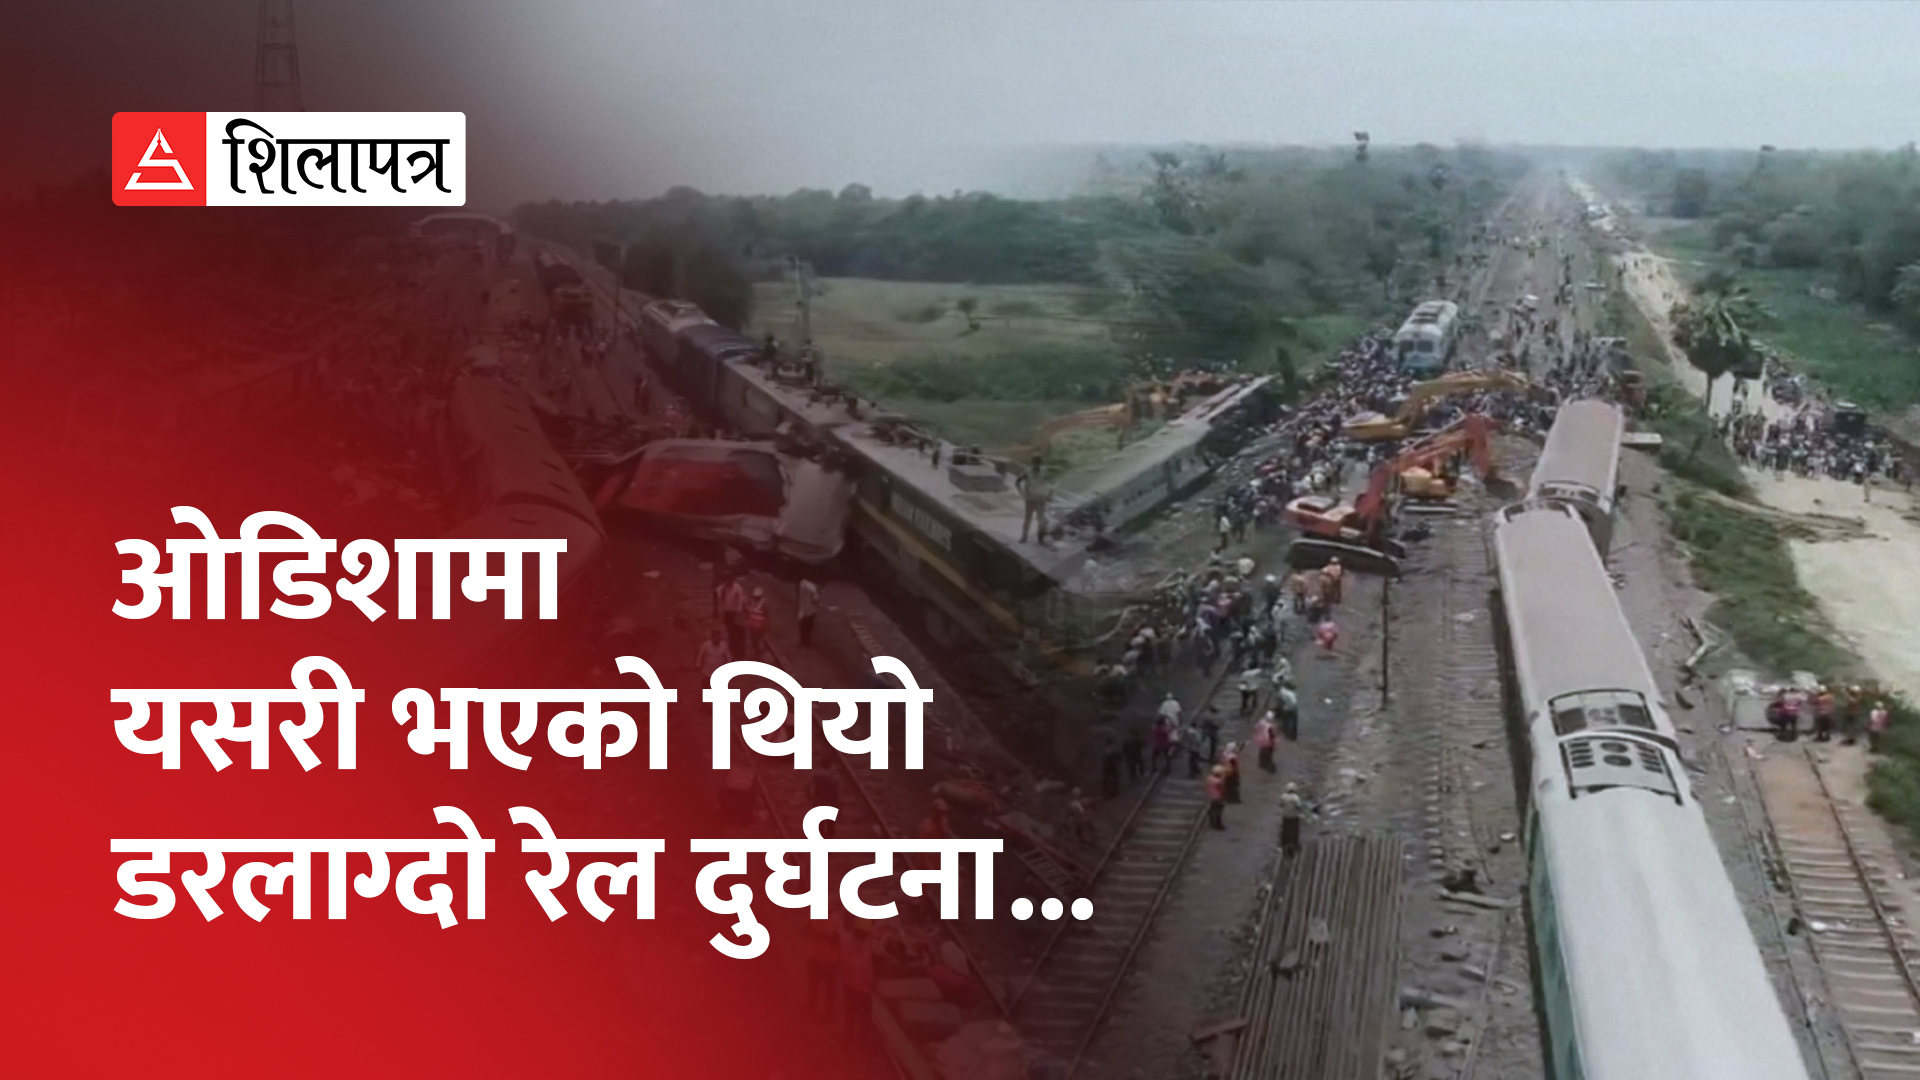 ओडिशा रेल दुर्घटनामा मृतककाे संख्या २ सय ९४ पुग्याे, रेलमन्त्रीलाई बर्खास्त गर्न माग (भिडियो)